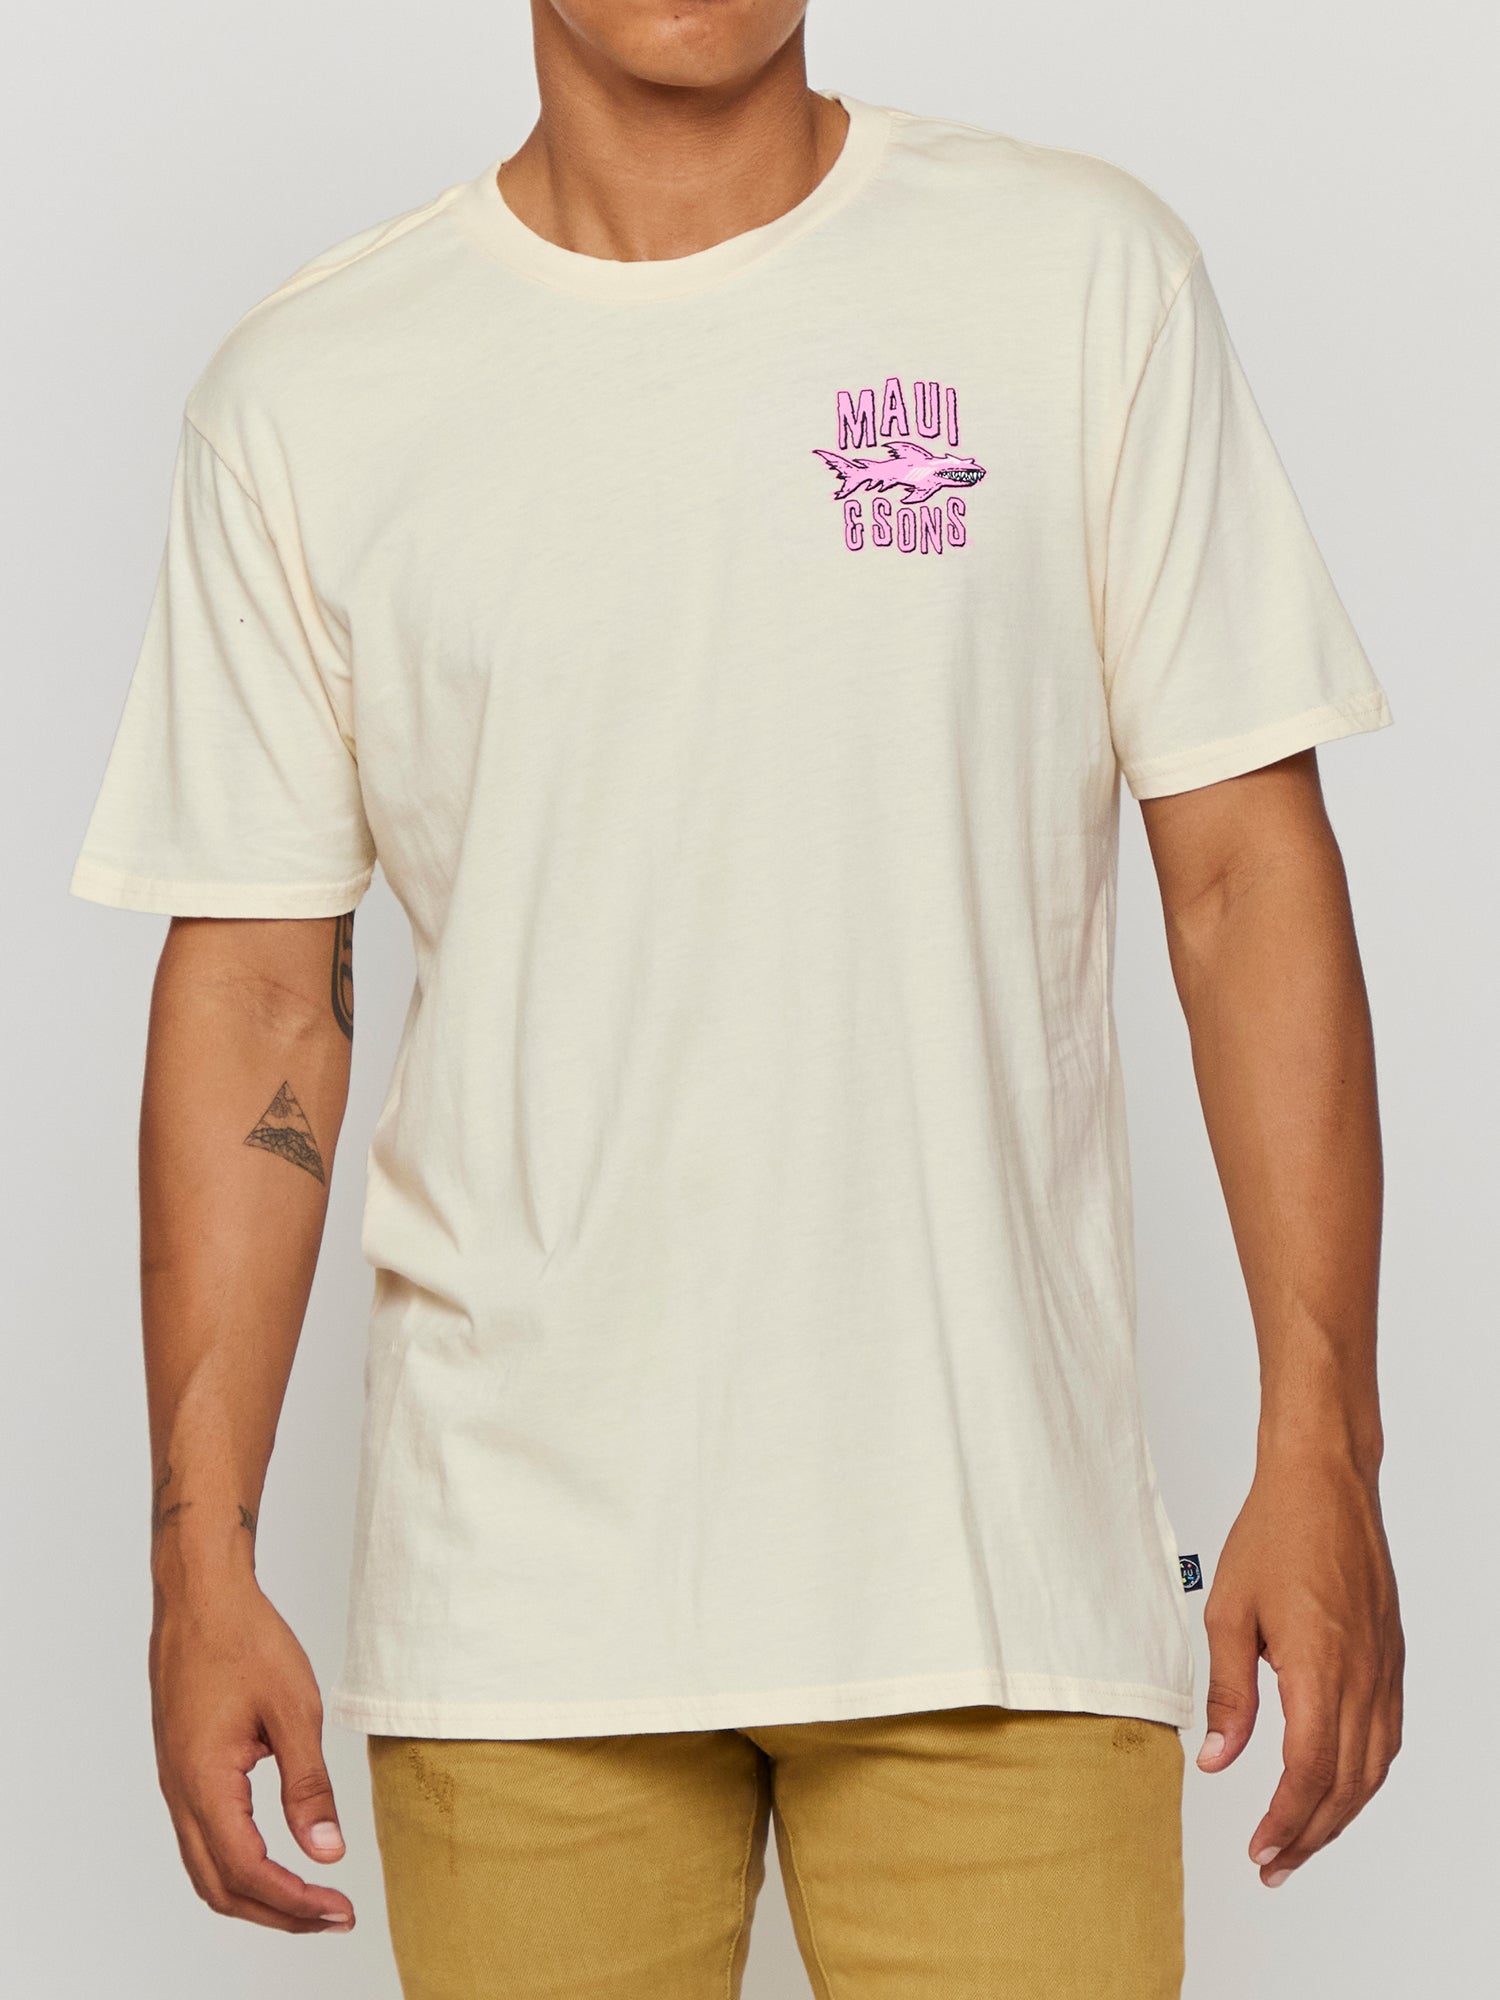 OG Surf Co T-Shirt in Vanilla